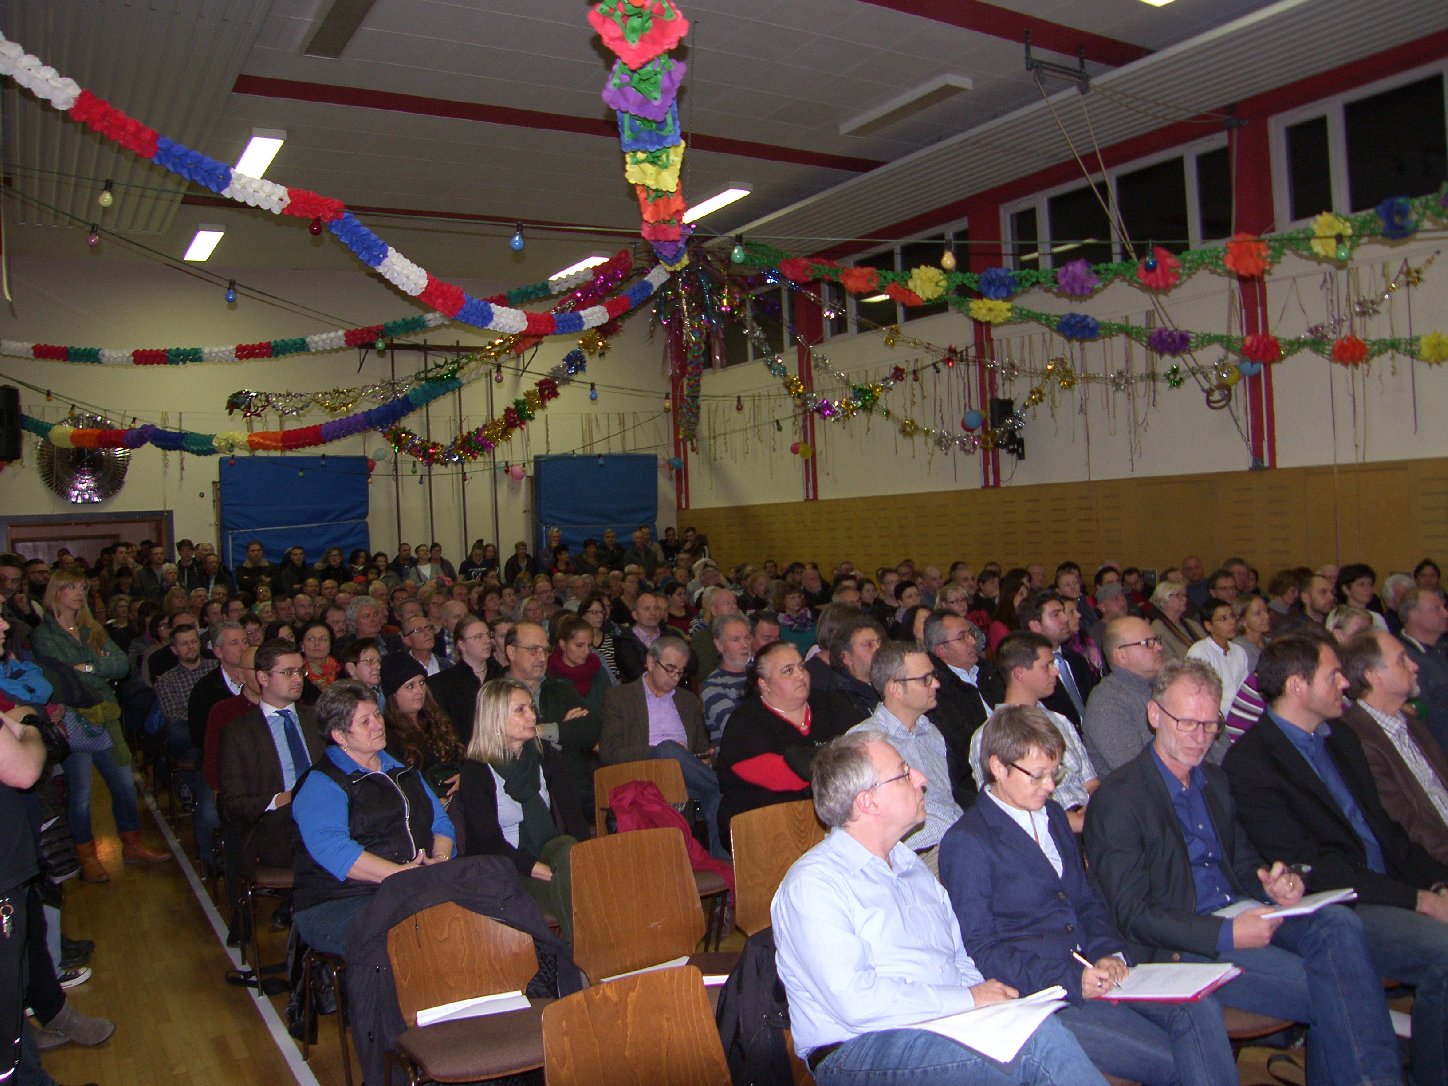 Bürgerversammlung in der Turnhalle in Dammheim. Es werden weitere Helfer für die ehrenamtliche Arbeit gesucht. Foto: Pfalz-Express/Ahme